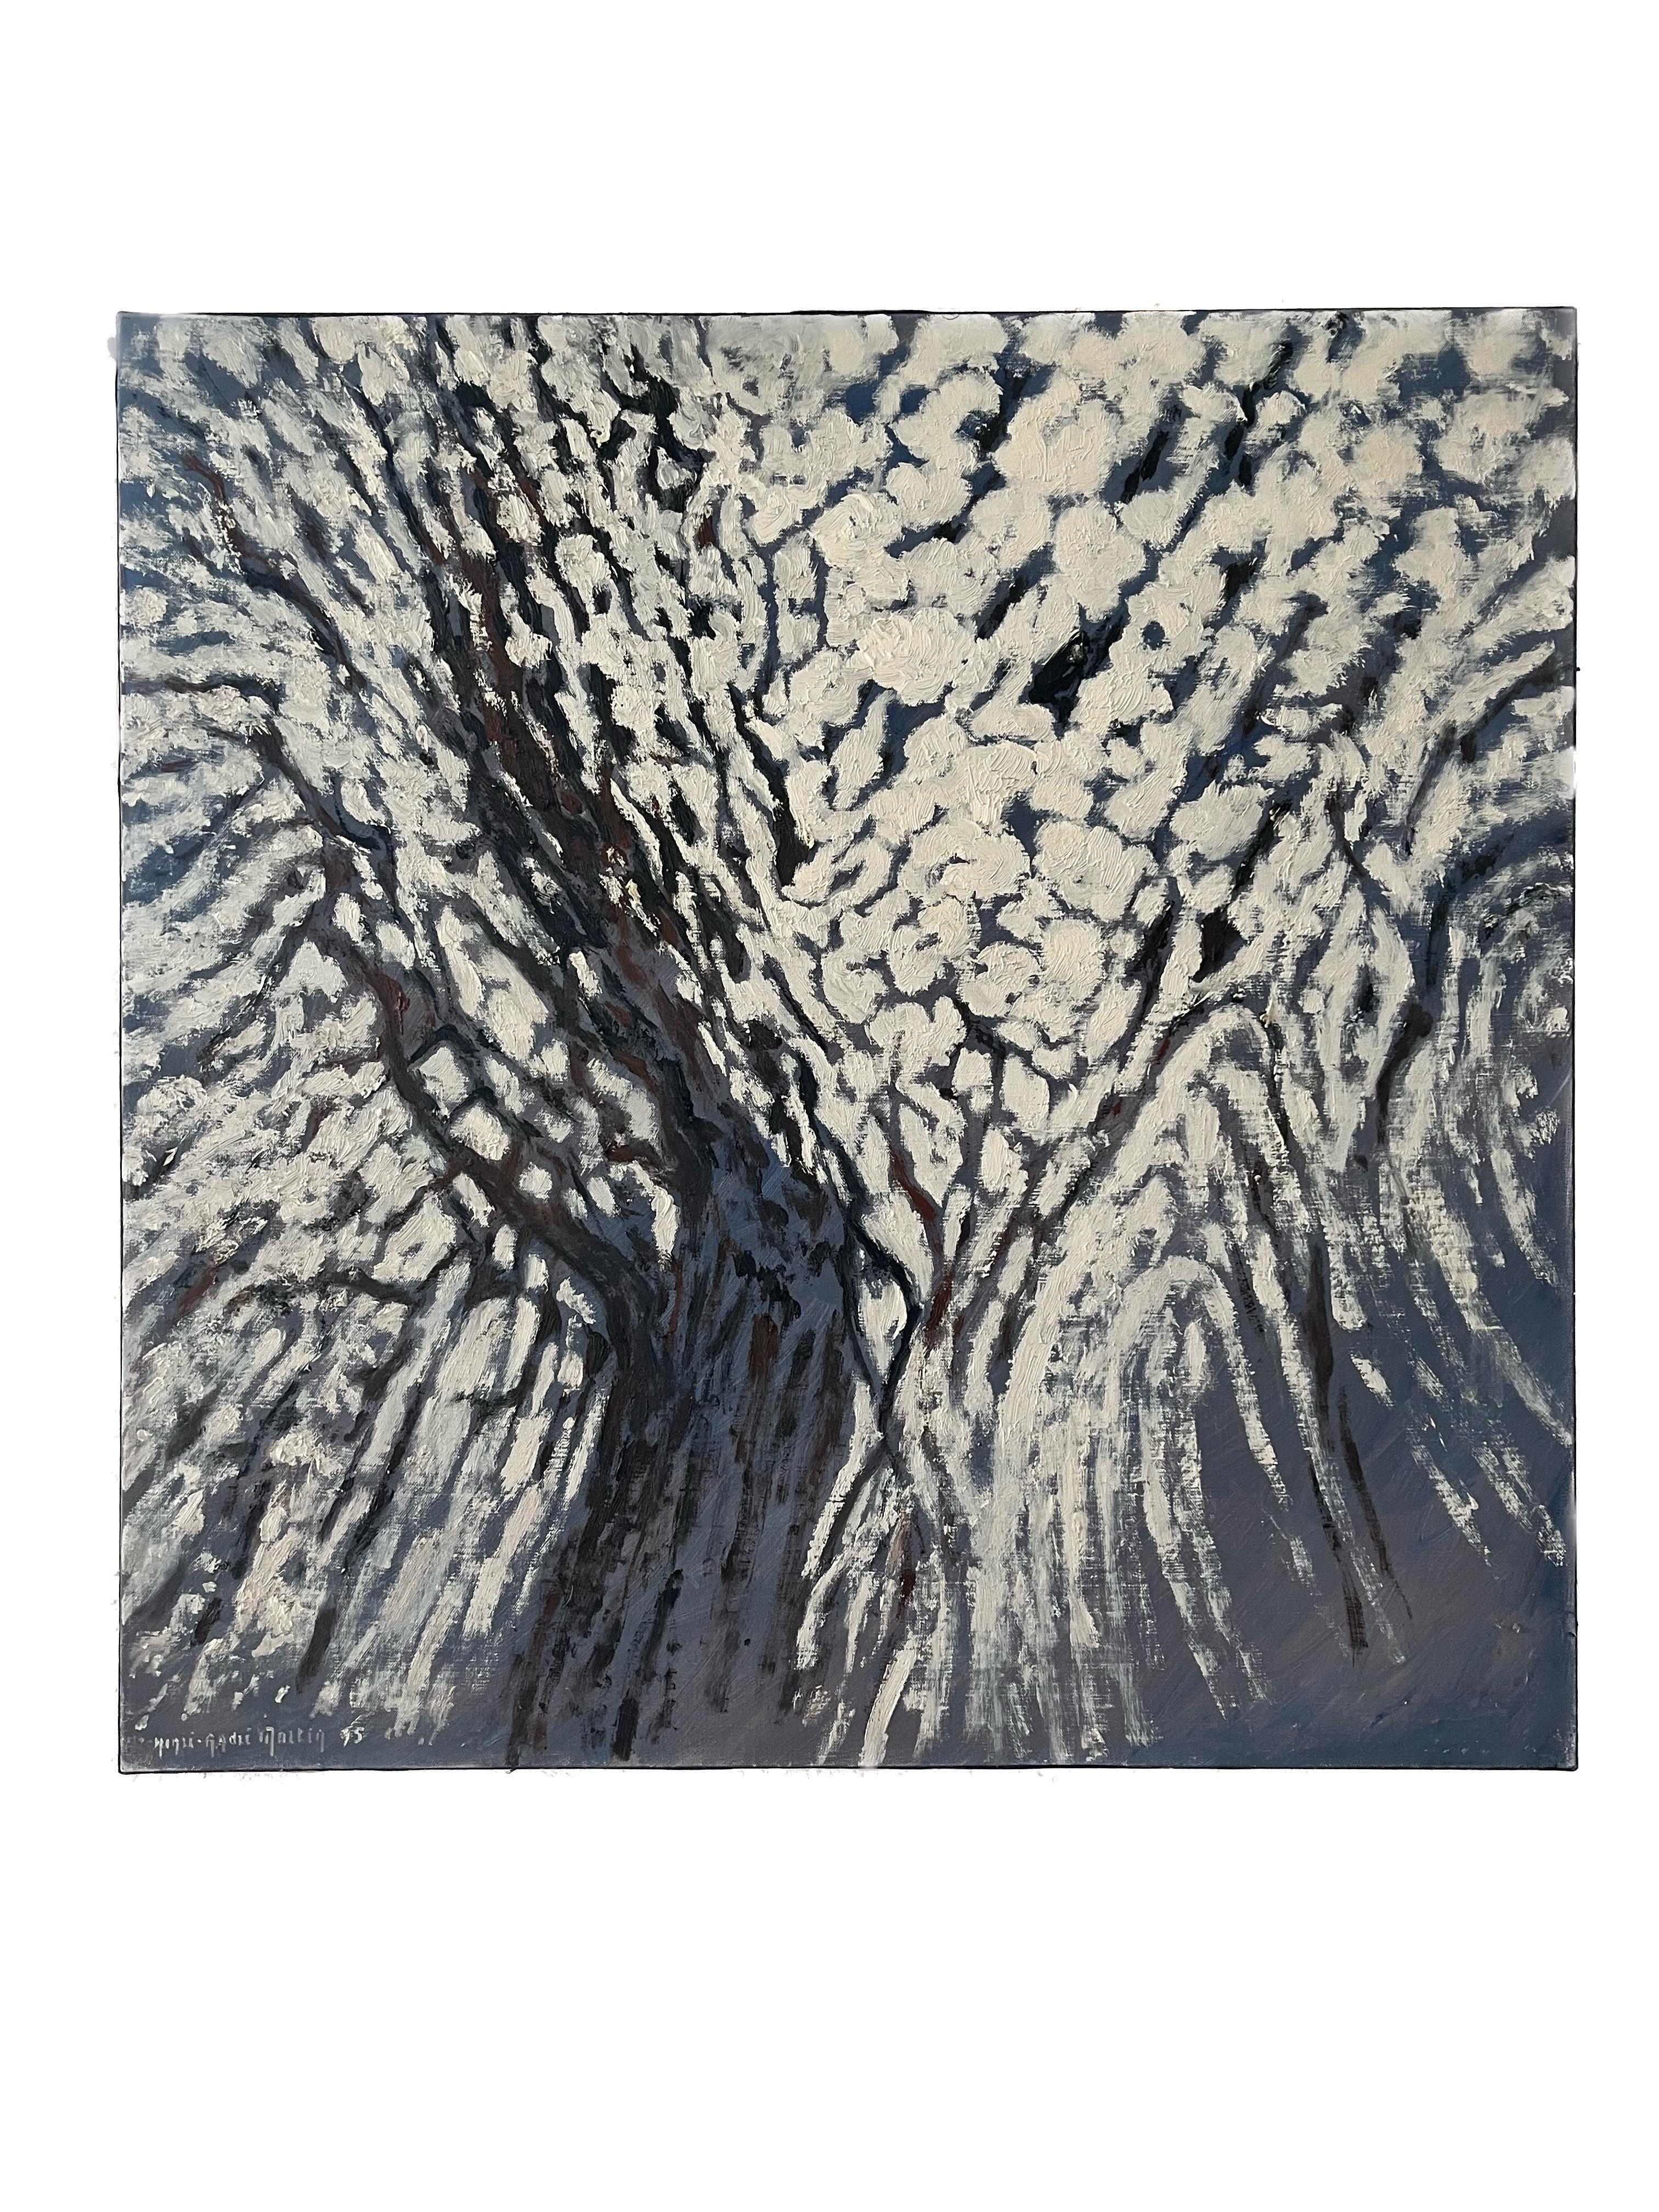 Landscape Painting Henri-André Martin - Grande vue abstraite d'un arbre d'almond avec fleurs de fleurs, moderniste française